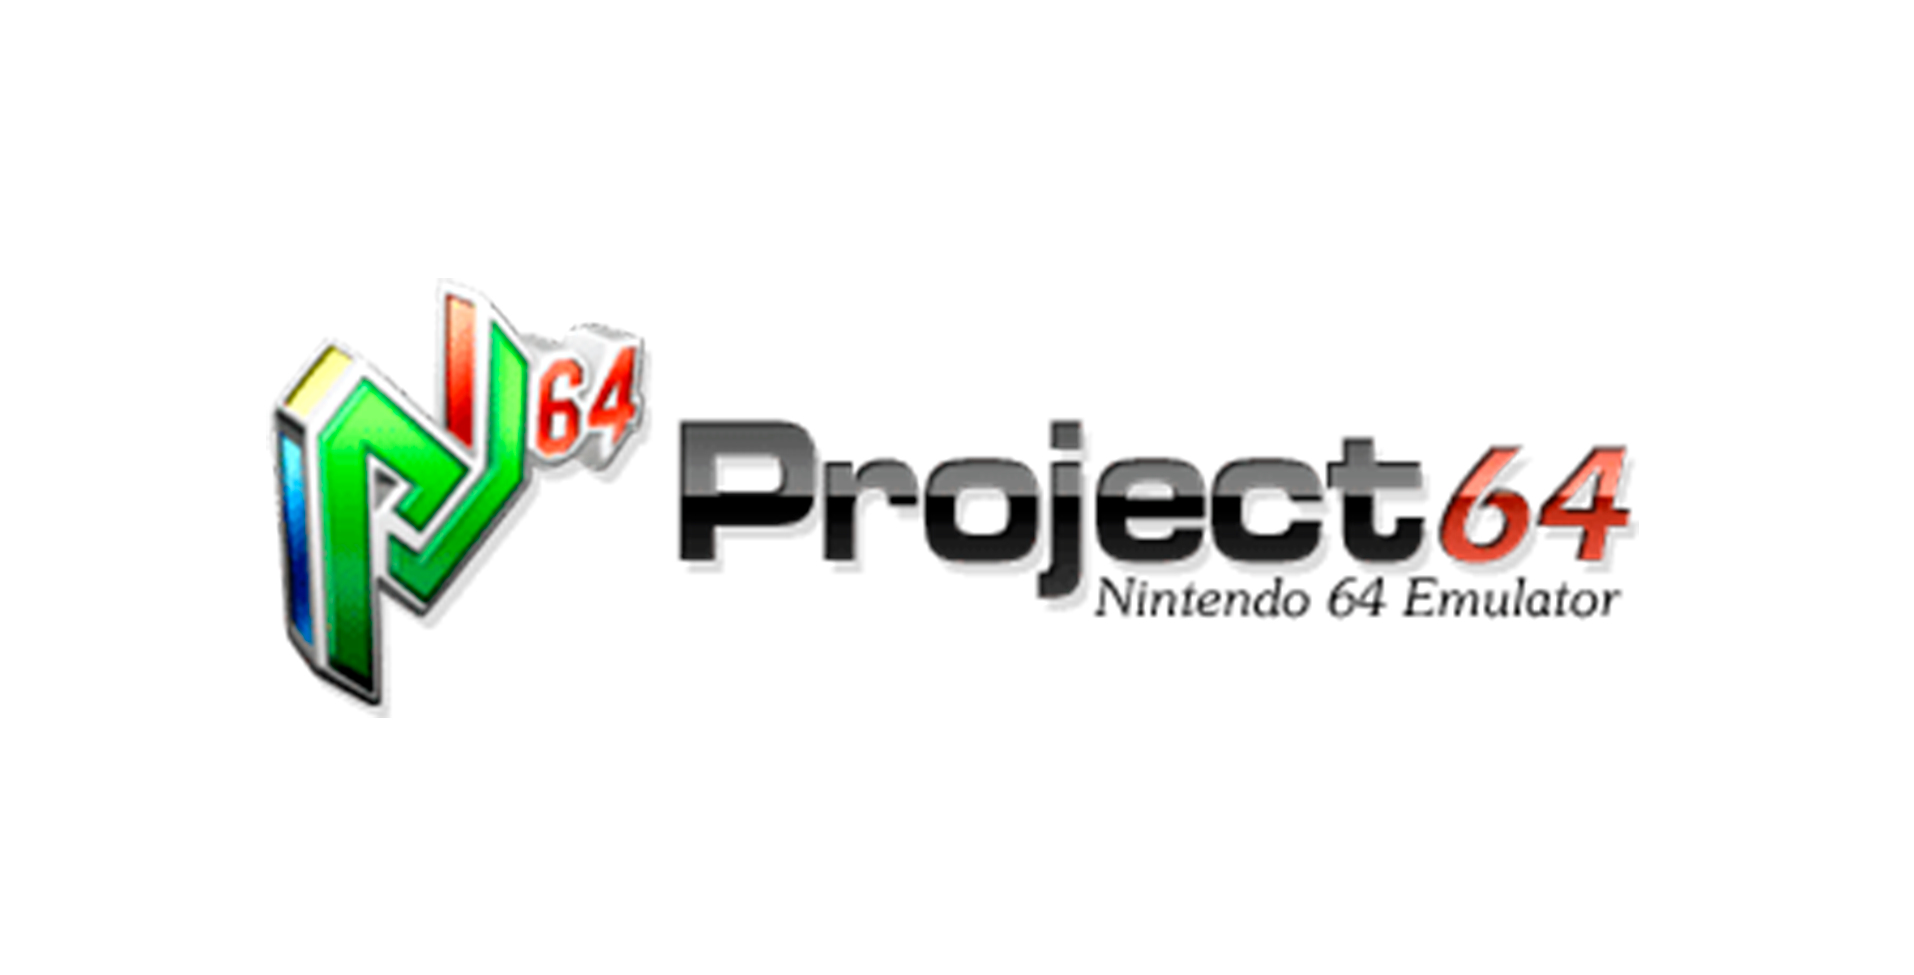 Project64 emuladores